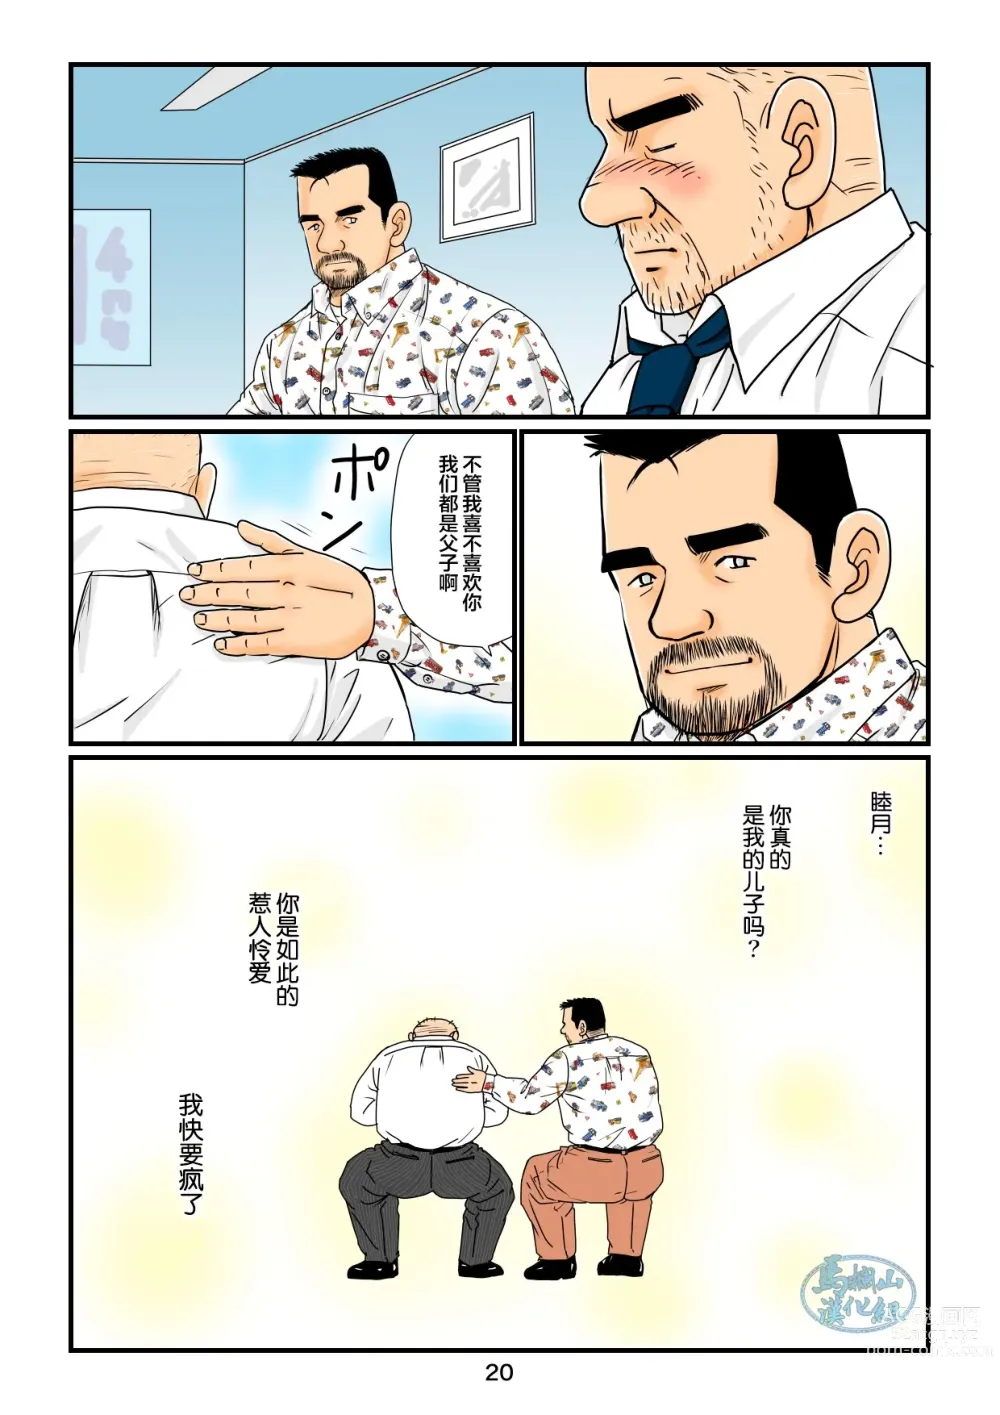 Page 20 of manga 「铁道员的浪漫」 第四回 站长和铁道员的前路